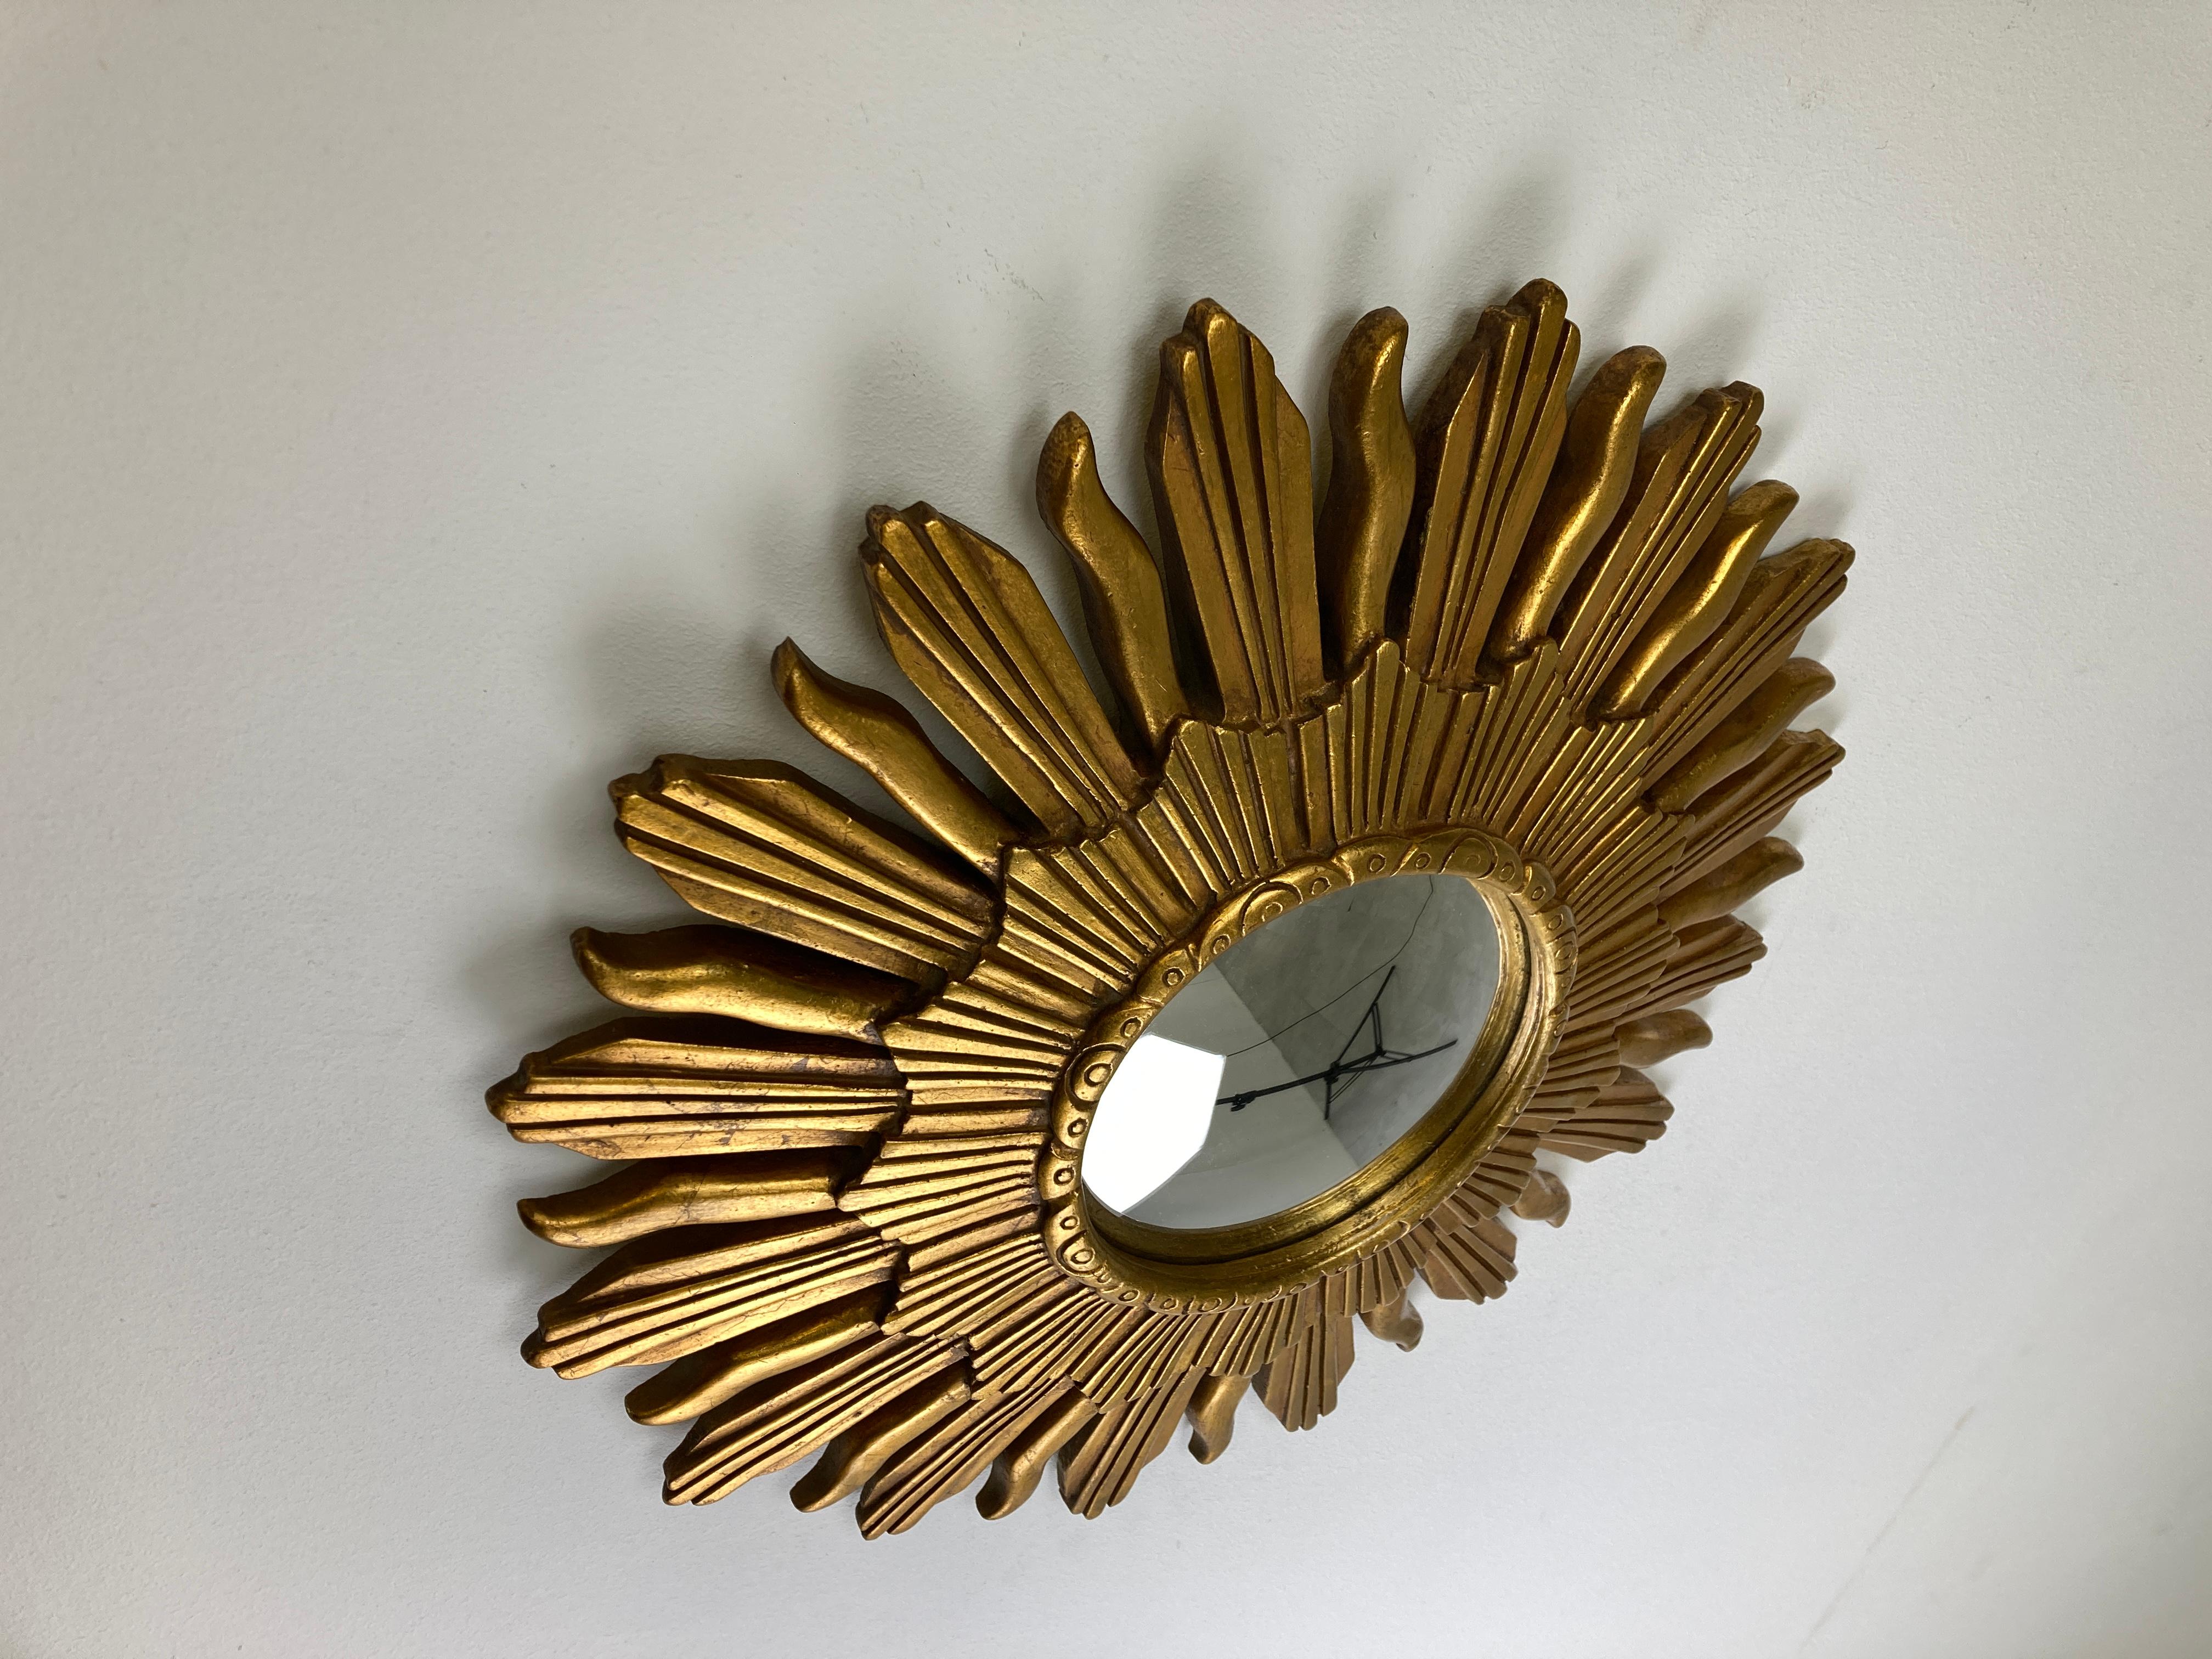 Spiegel mit Sonnenschliff aus vergoldetem Harz und konvexem Spiegelglas.

Der goldene Spiegel ist in einem guten Zustand.

1960er Jahre - hergestellt in Belgien.

Abmessungen:
Durchmesser: 47cm/18.50